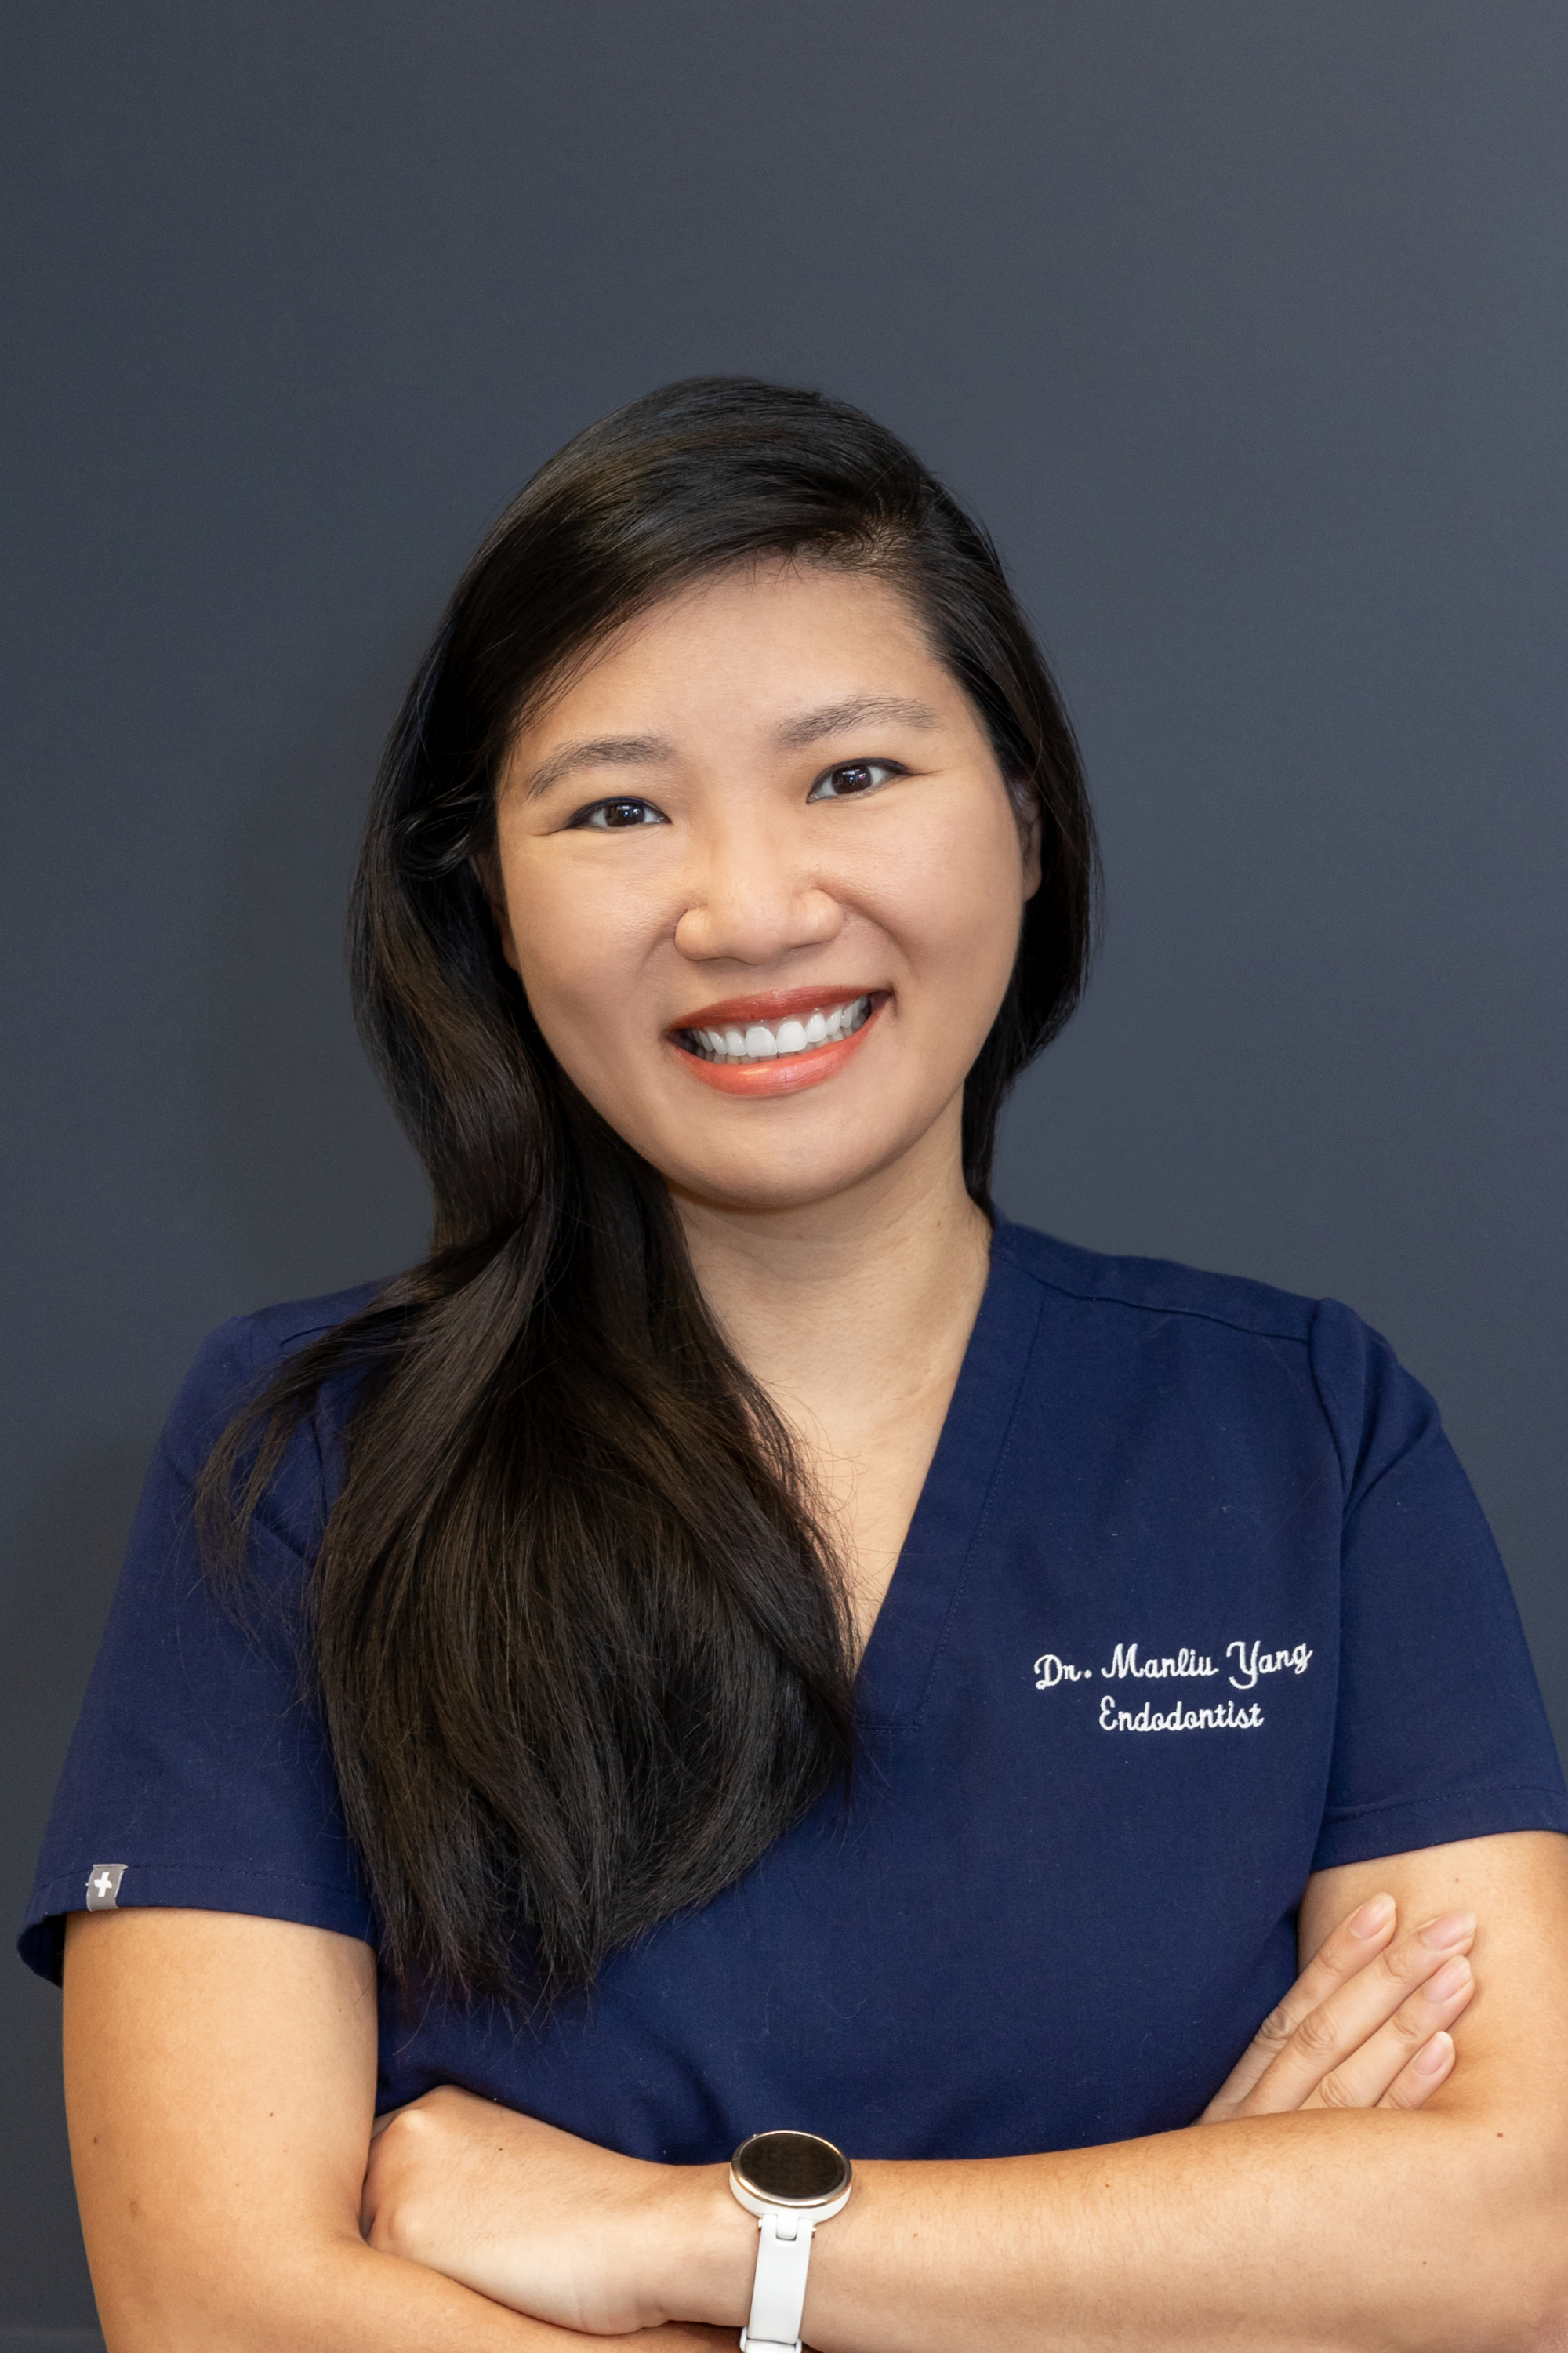 Profile photo of Dr. Grace Manliu Yang, 